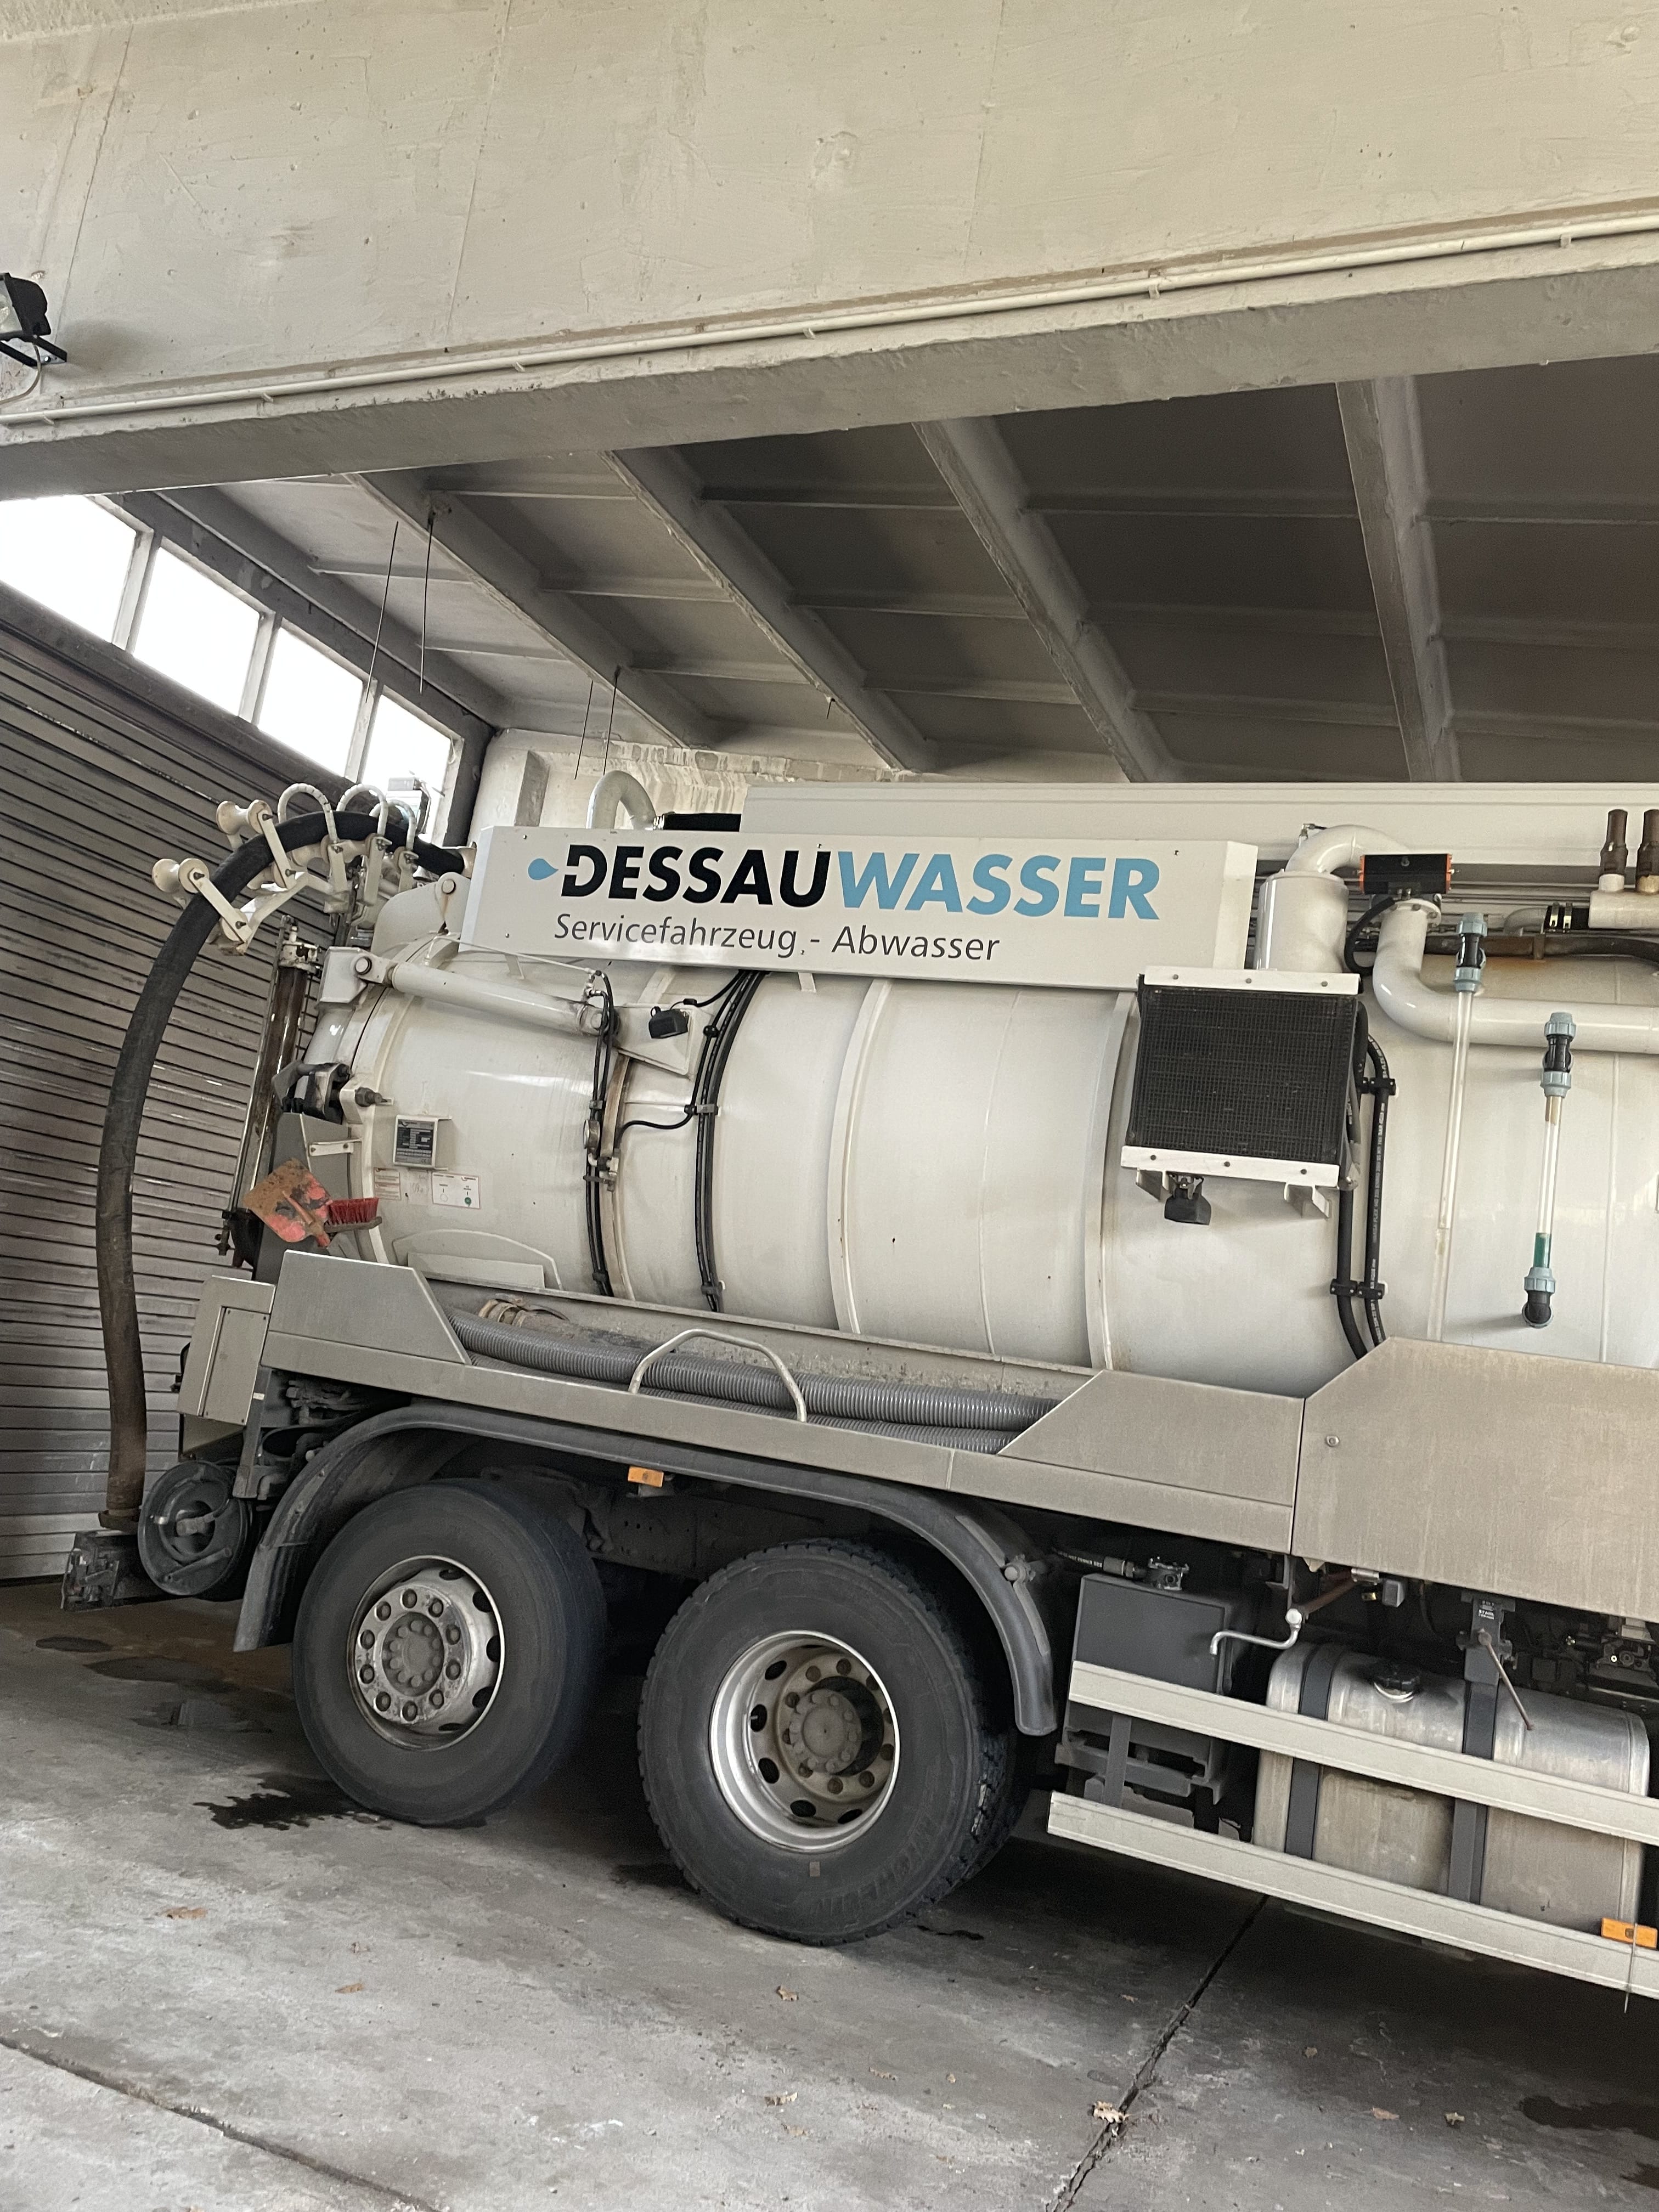 Servicefahrzeug der Dessauer Wasser- und Abwasser GmbH